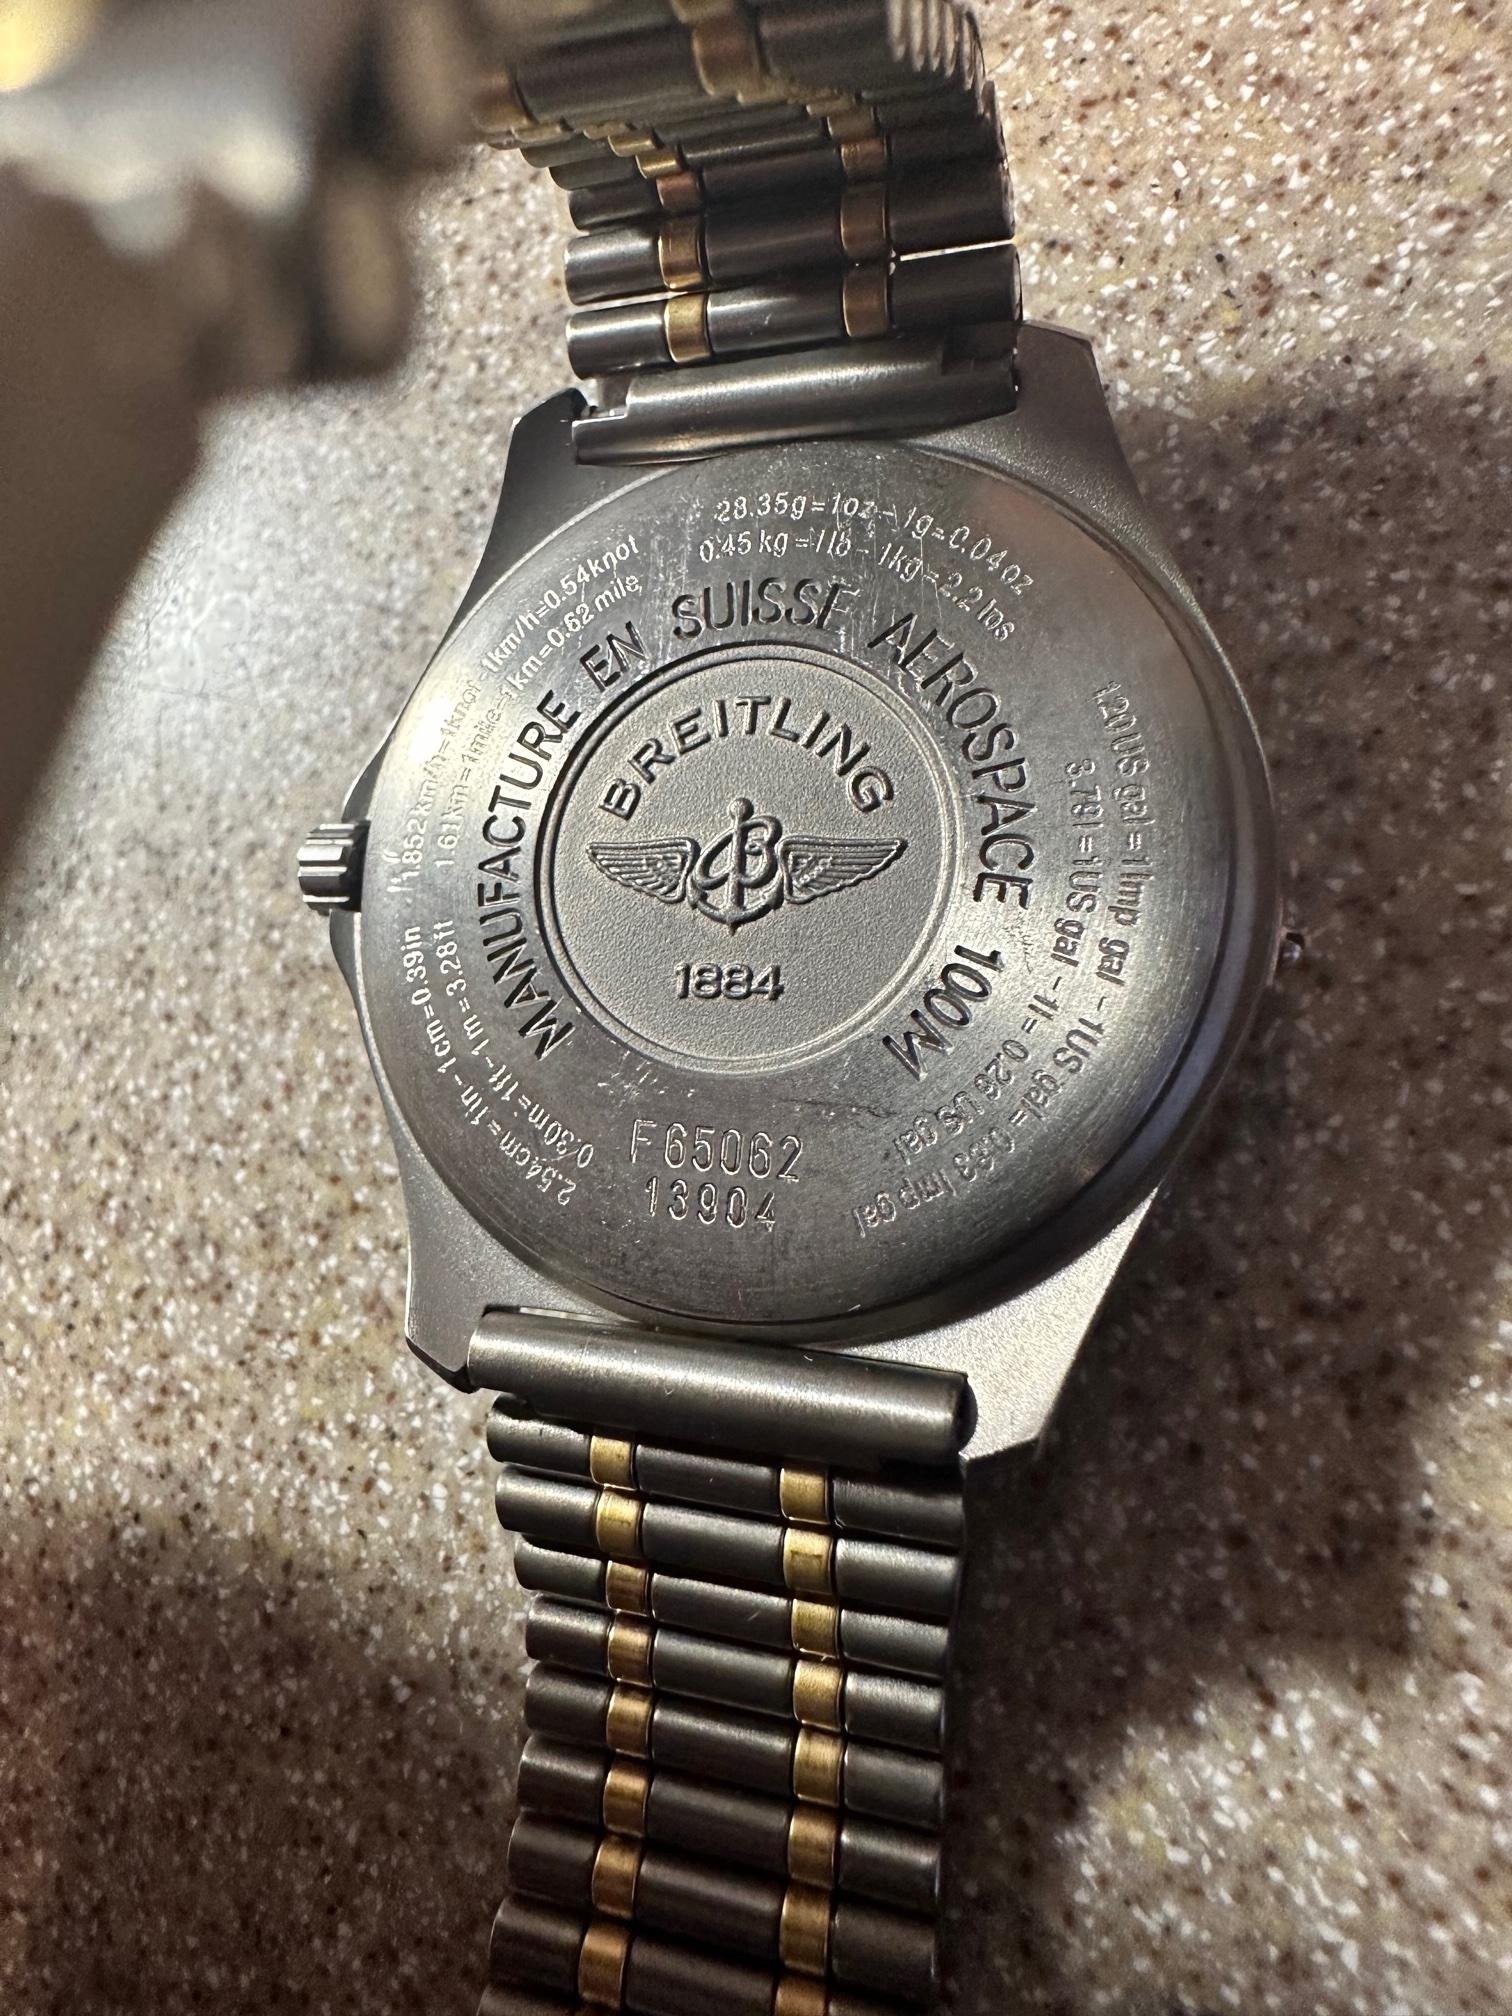 Breitling Aerospace 100m Titanium Case & Bracelet W/ Black Dial Chronograph  For Sale 5